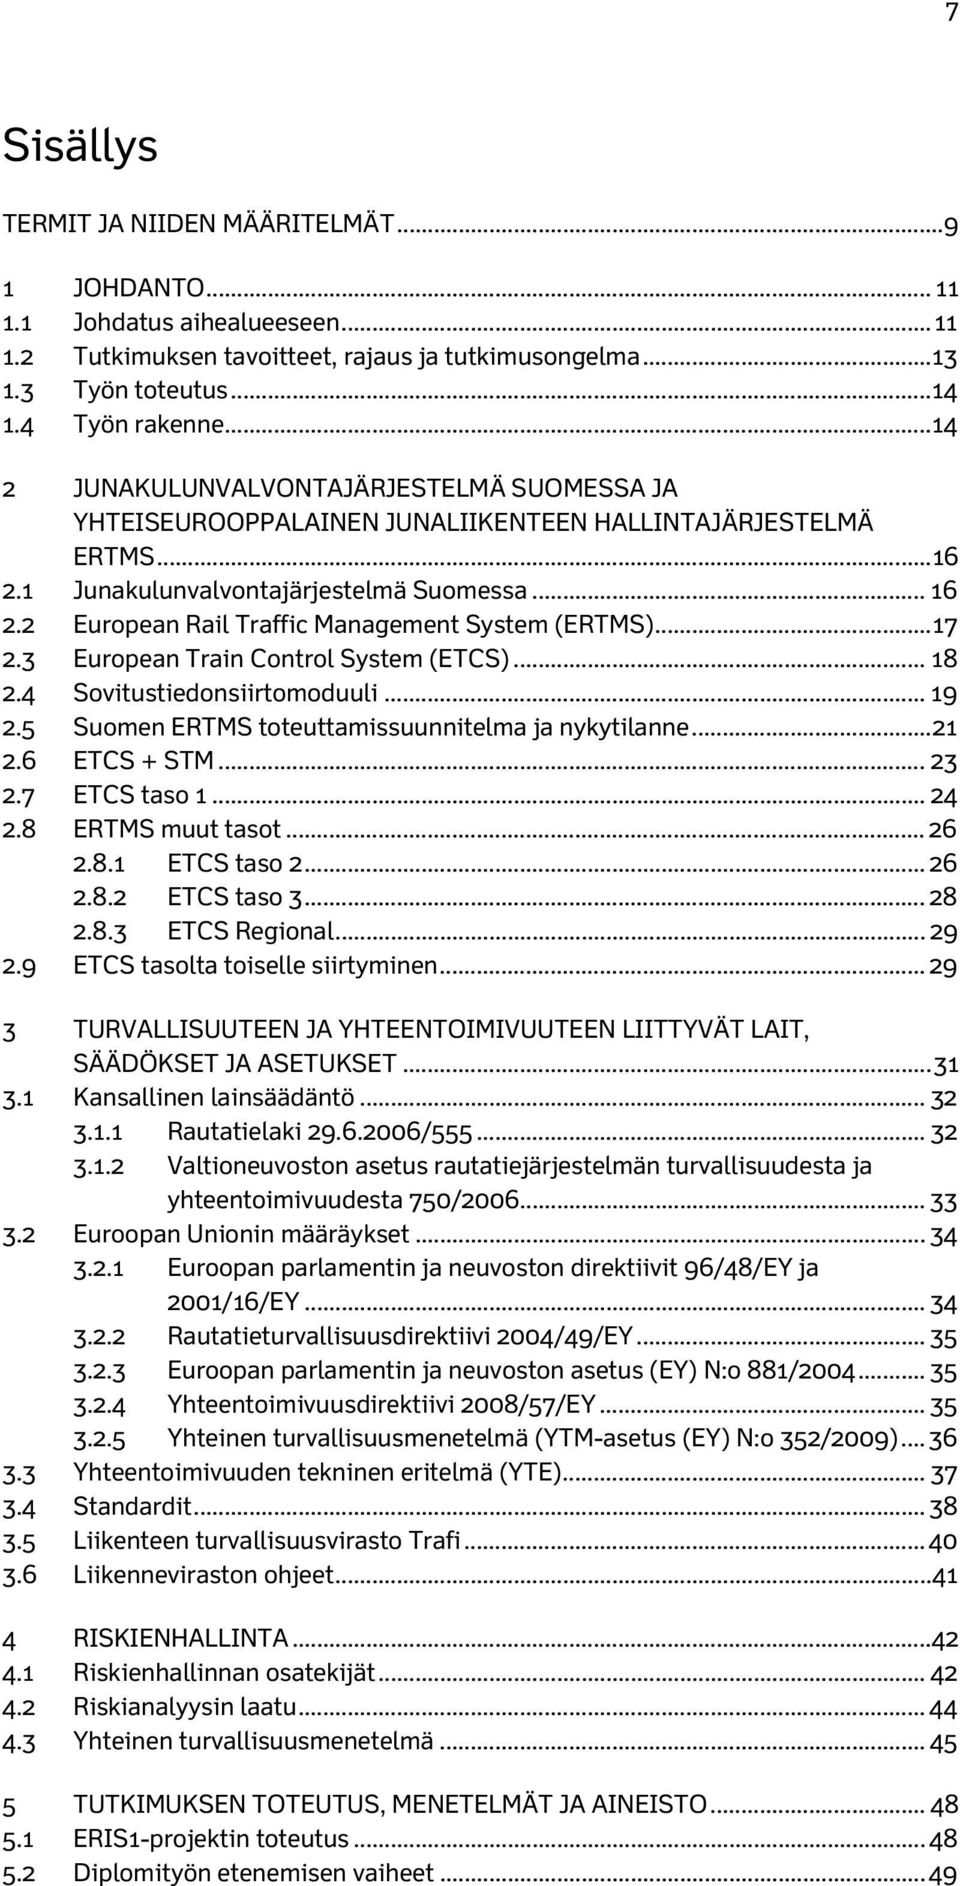 .. 17 2.3 European Train Control System (ETCS)... 18 2.4 Sovitustiedonsiirtomoduuli... 19 2.5 Suomen ERTMS toteuttamissuunnitelma ja nykytilanne... 21 2.6 ETCS + STM... 23 2.7 ETCS taso 1... 24 2.